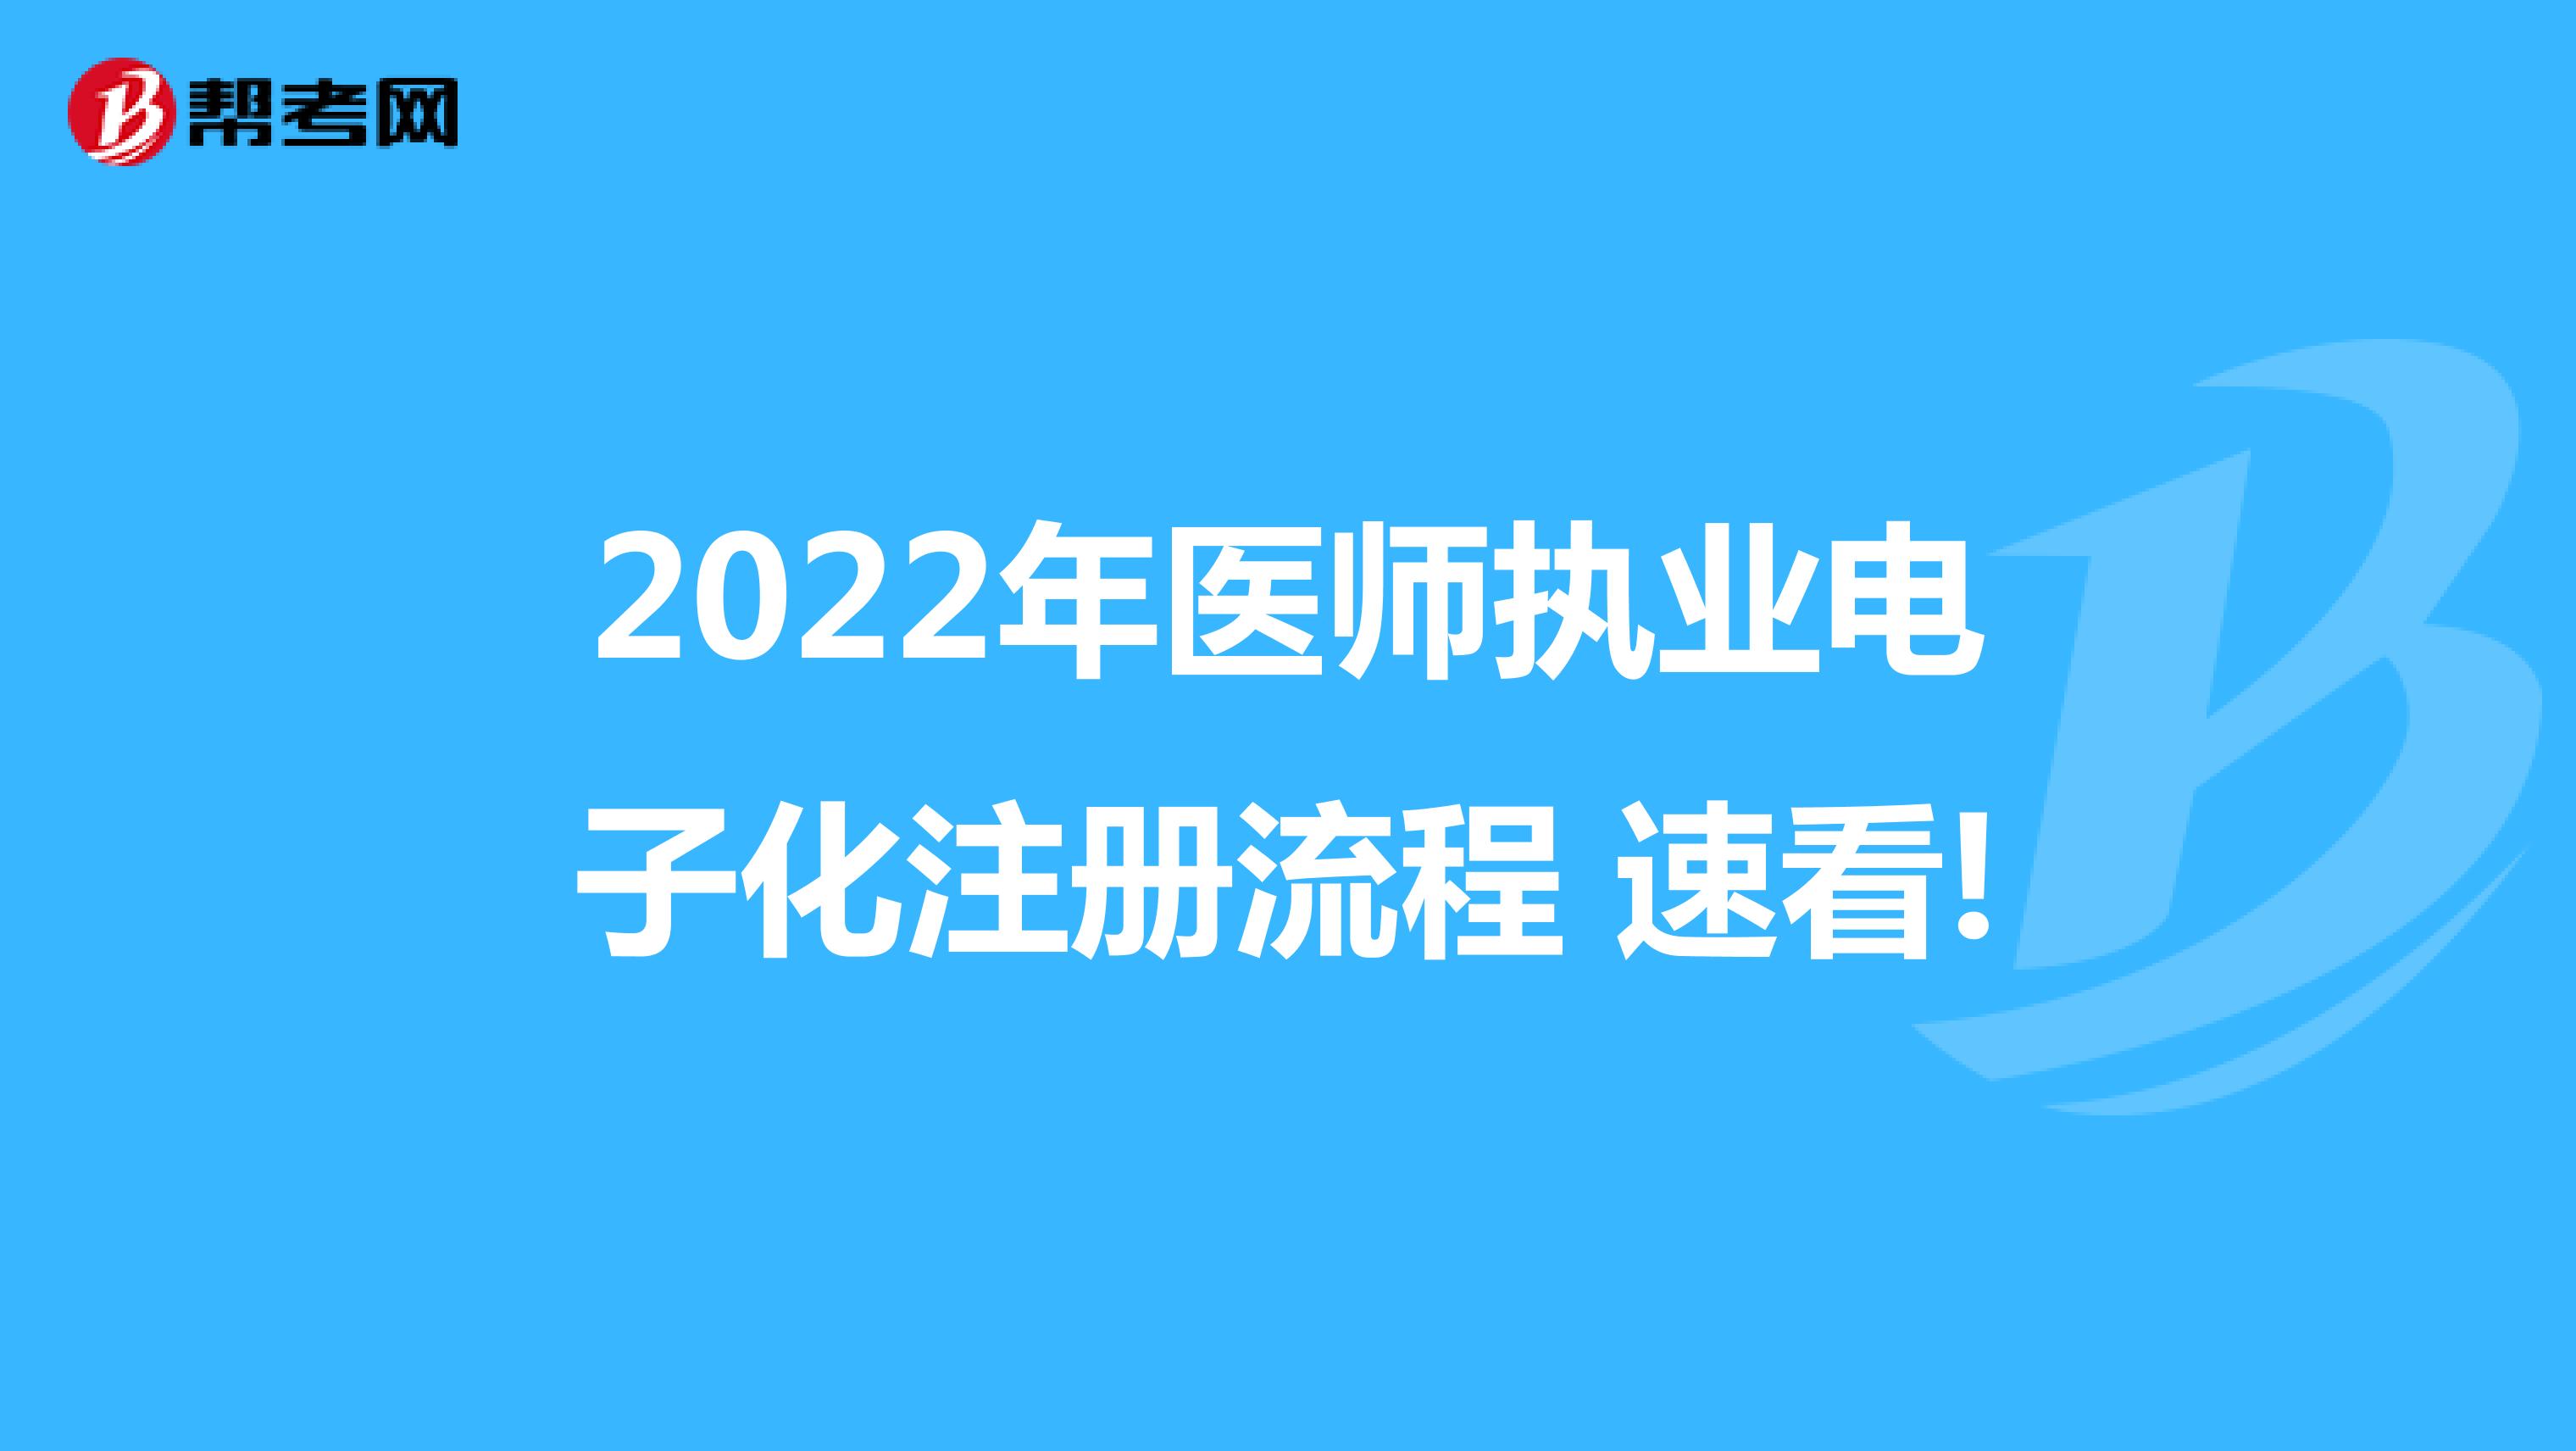 2022年医师执业电子化注册流程 速看!